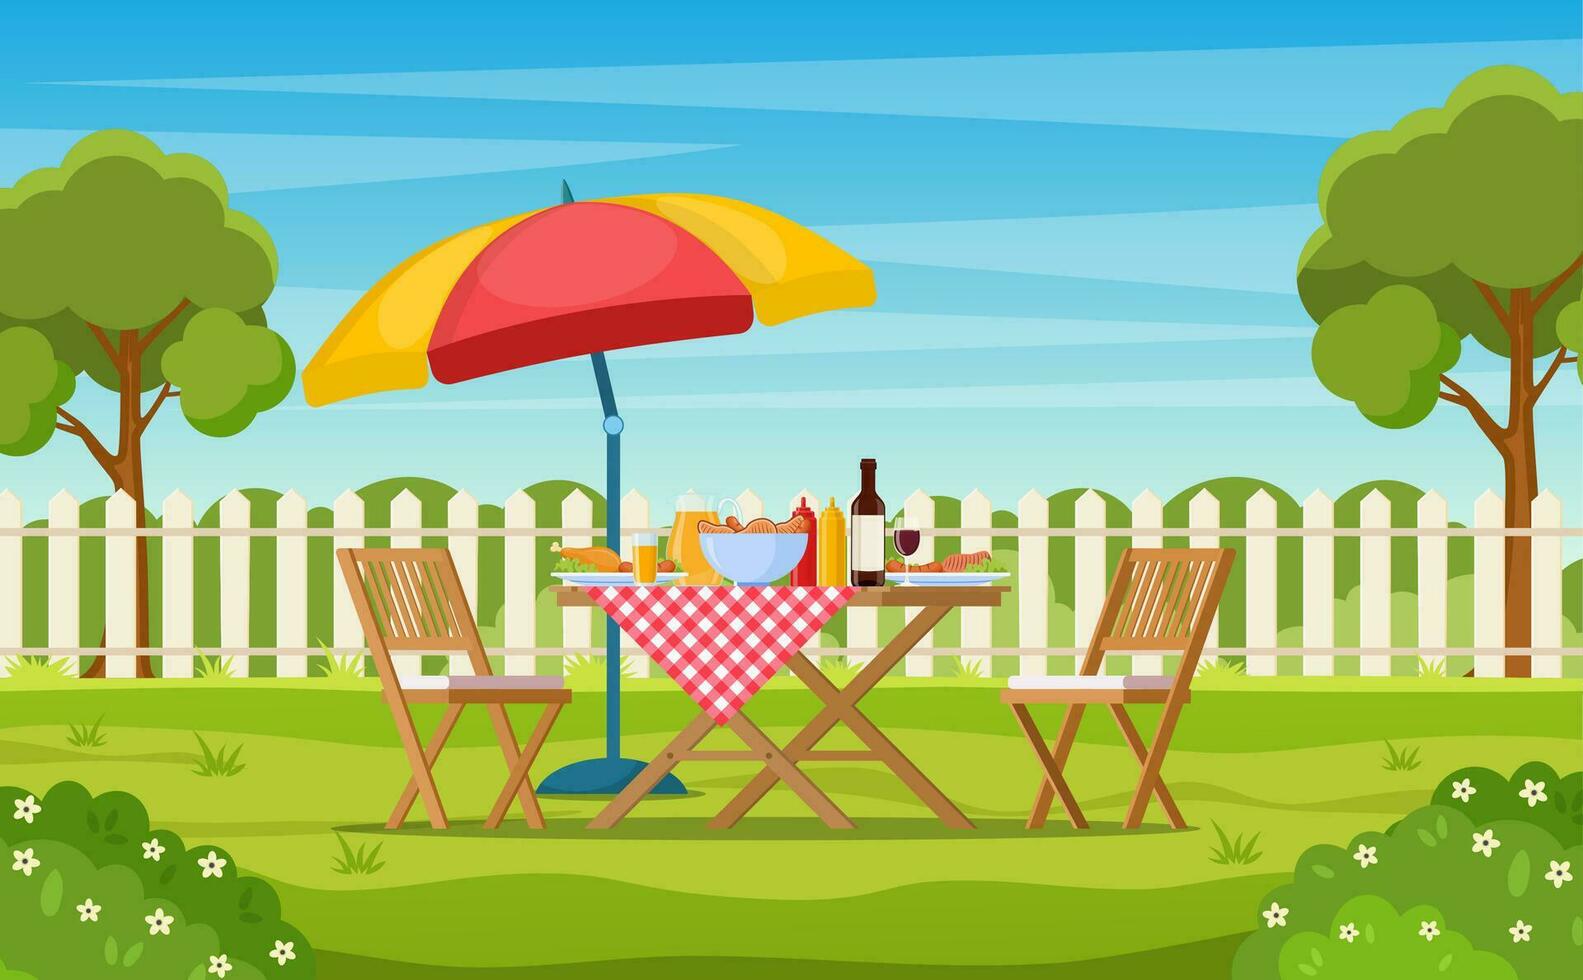 barbecue partij in de achtertuin met schutting, bomen, struiken. picknick met barbecue Aan zomer gazon in park of tuin voedsel Aan tafel, stoelen en paraplu. vector illustratie in vlak ontwerp